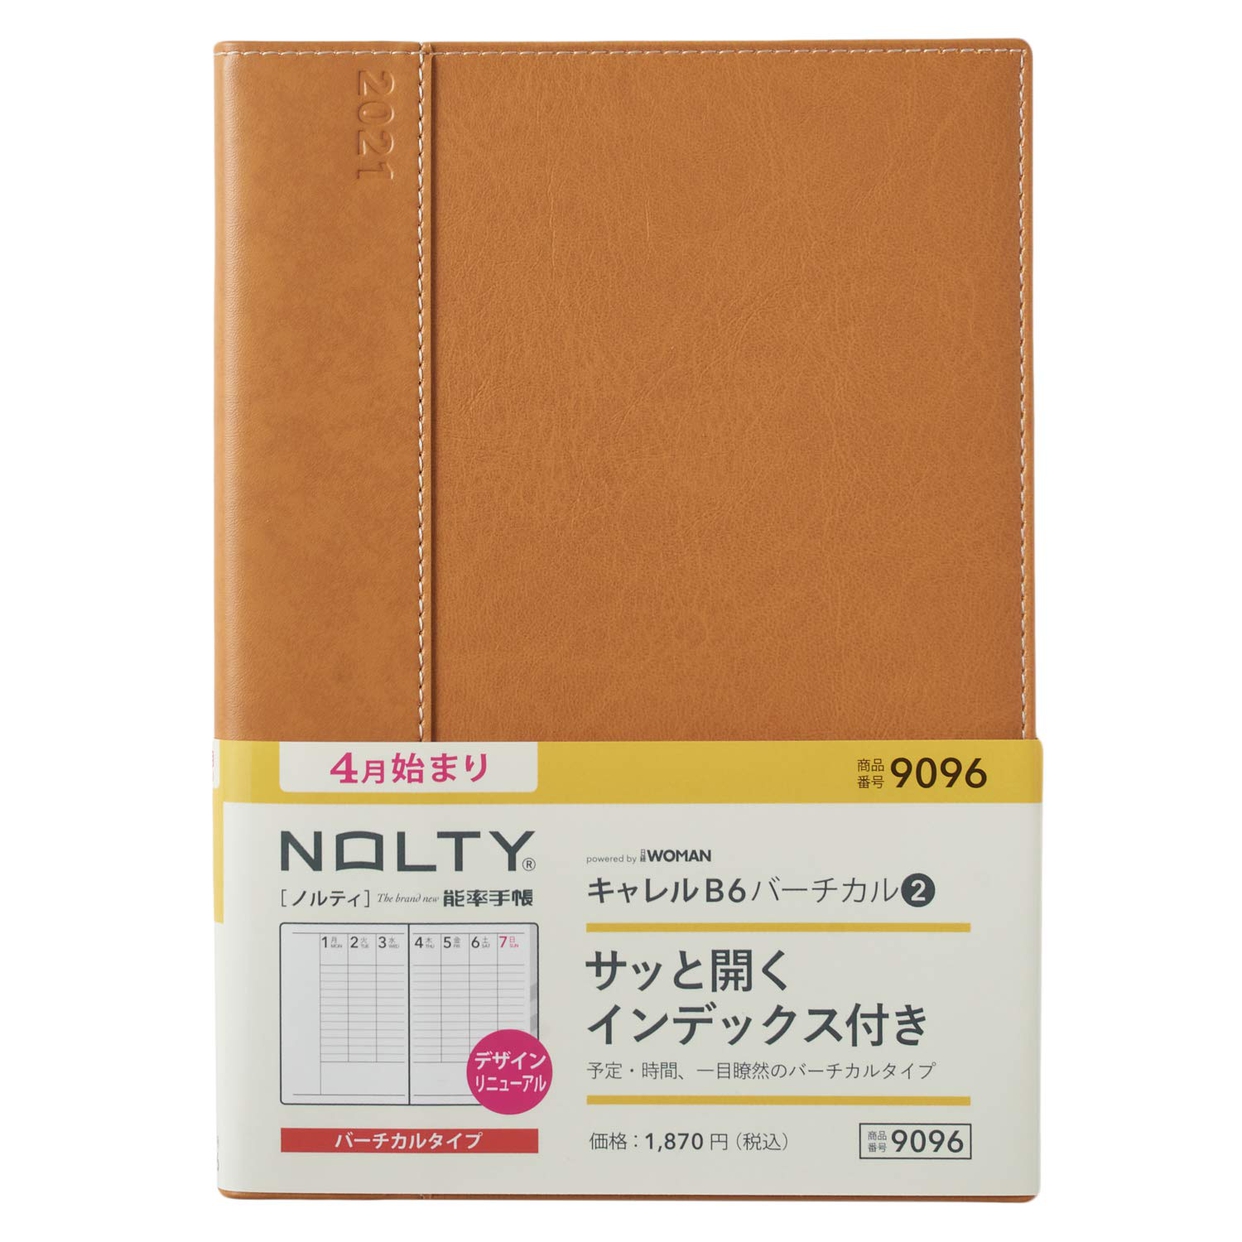 日本能率協会(JMAM) NOLTY キャレル バーチカル2 9096